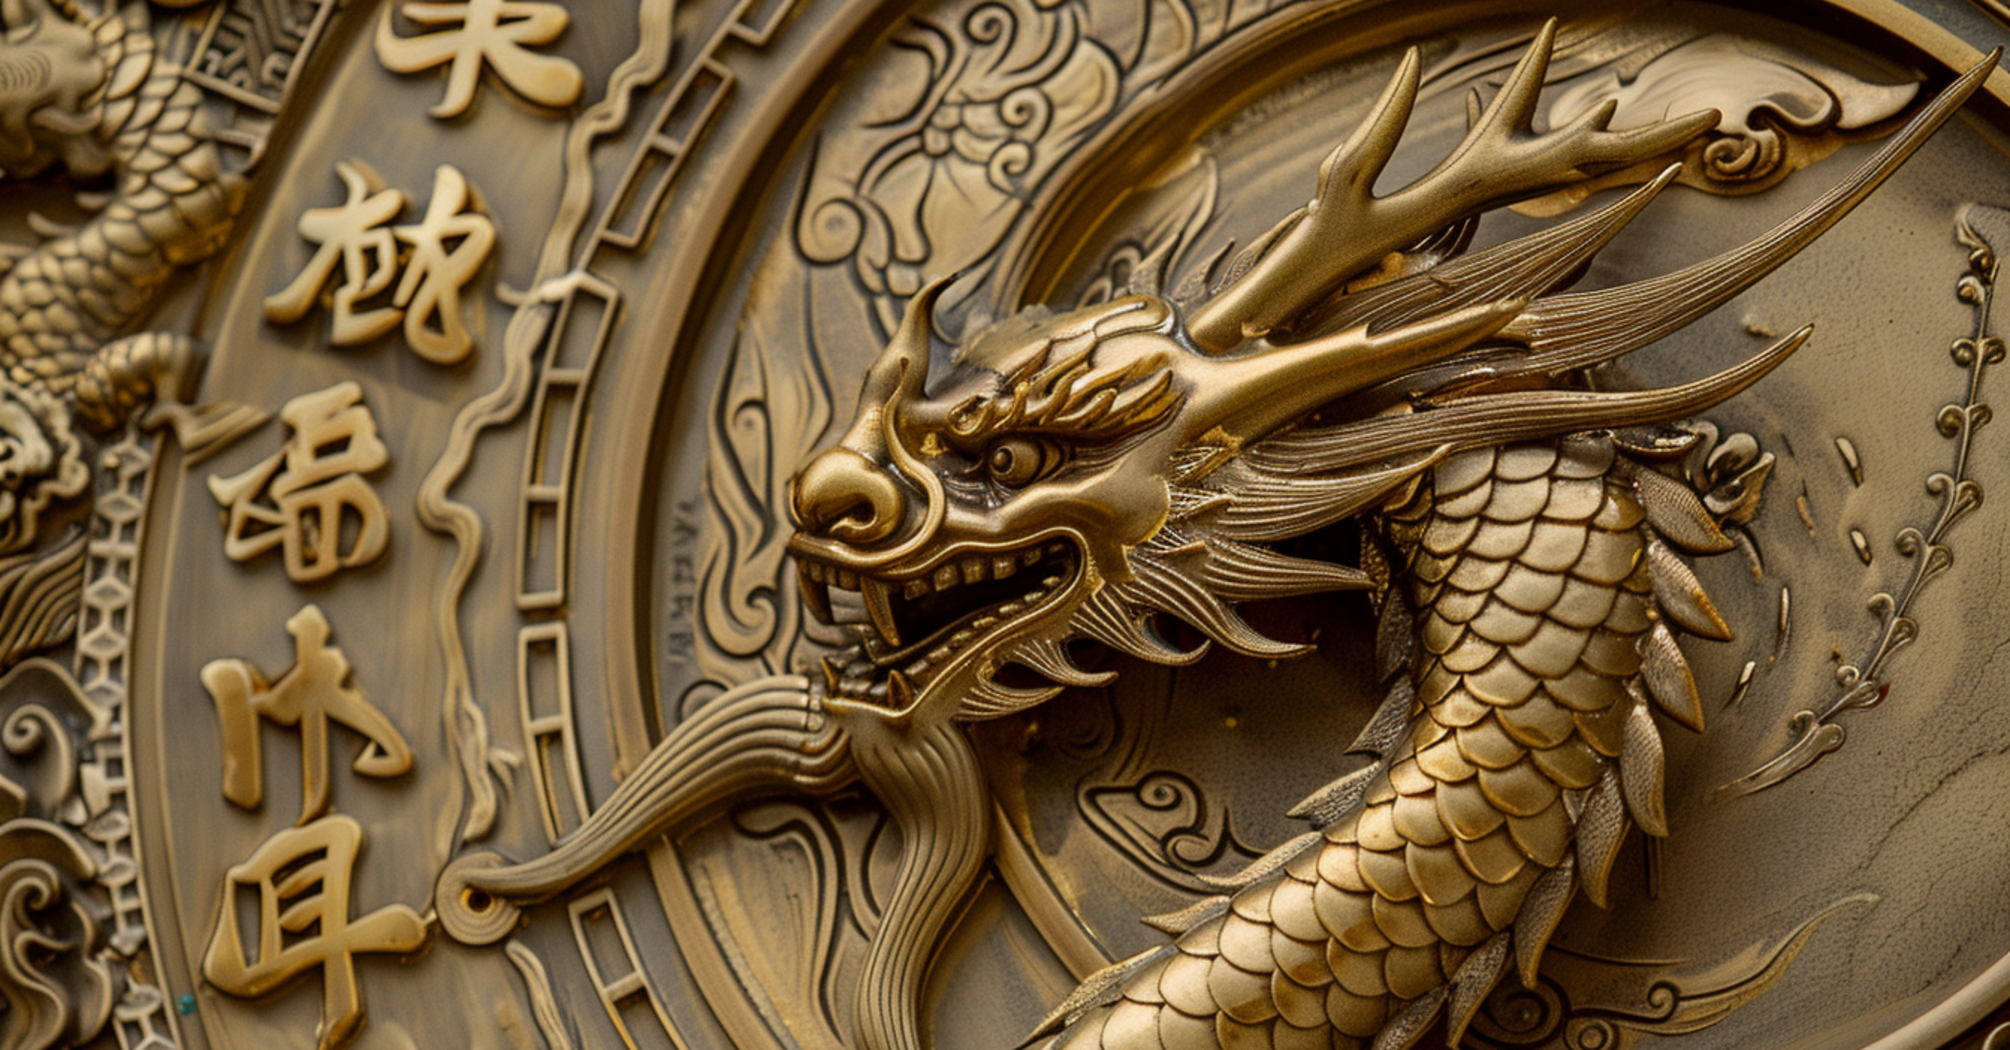 Очікуються позитивні зміни в житті: китайський гороскоп на 7 березня